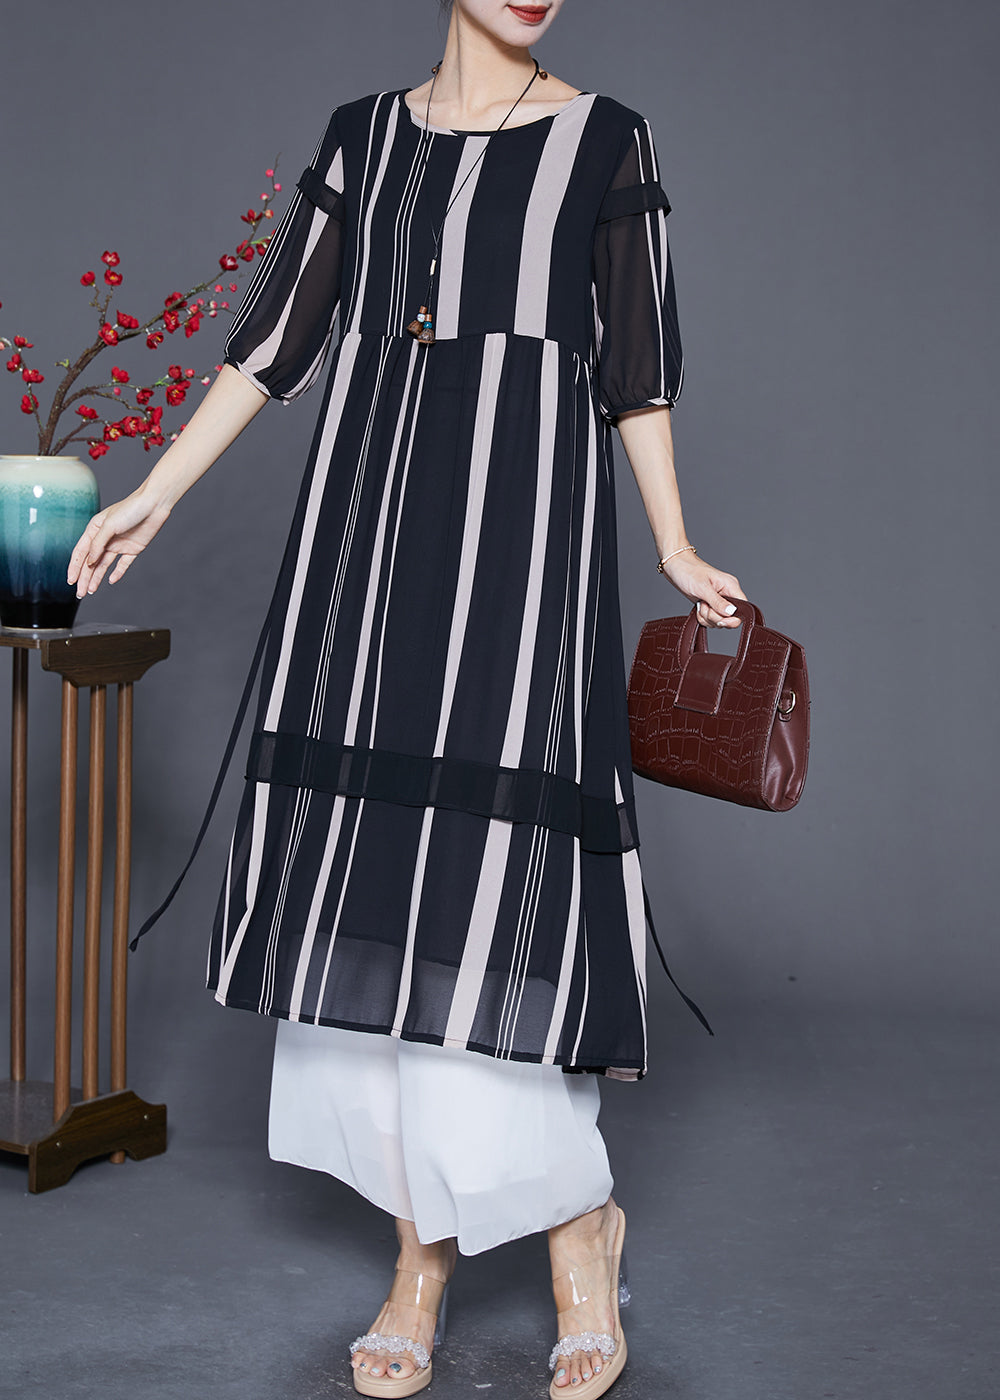 Modern Black Striped Patchwork Chiffon Maxi Dresses Half Sleeve Ada Fashion